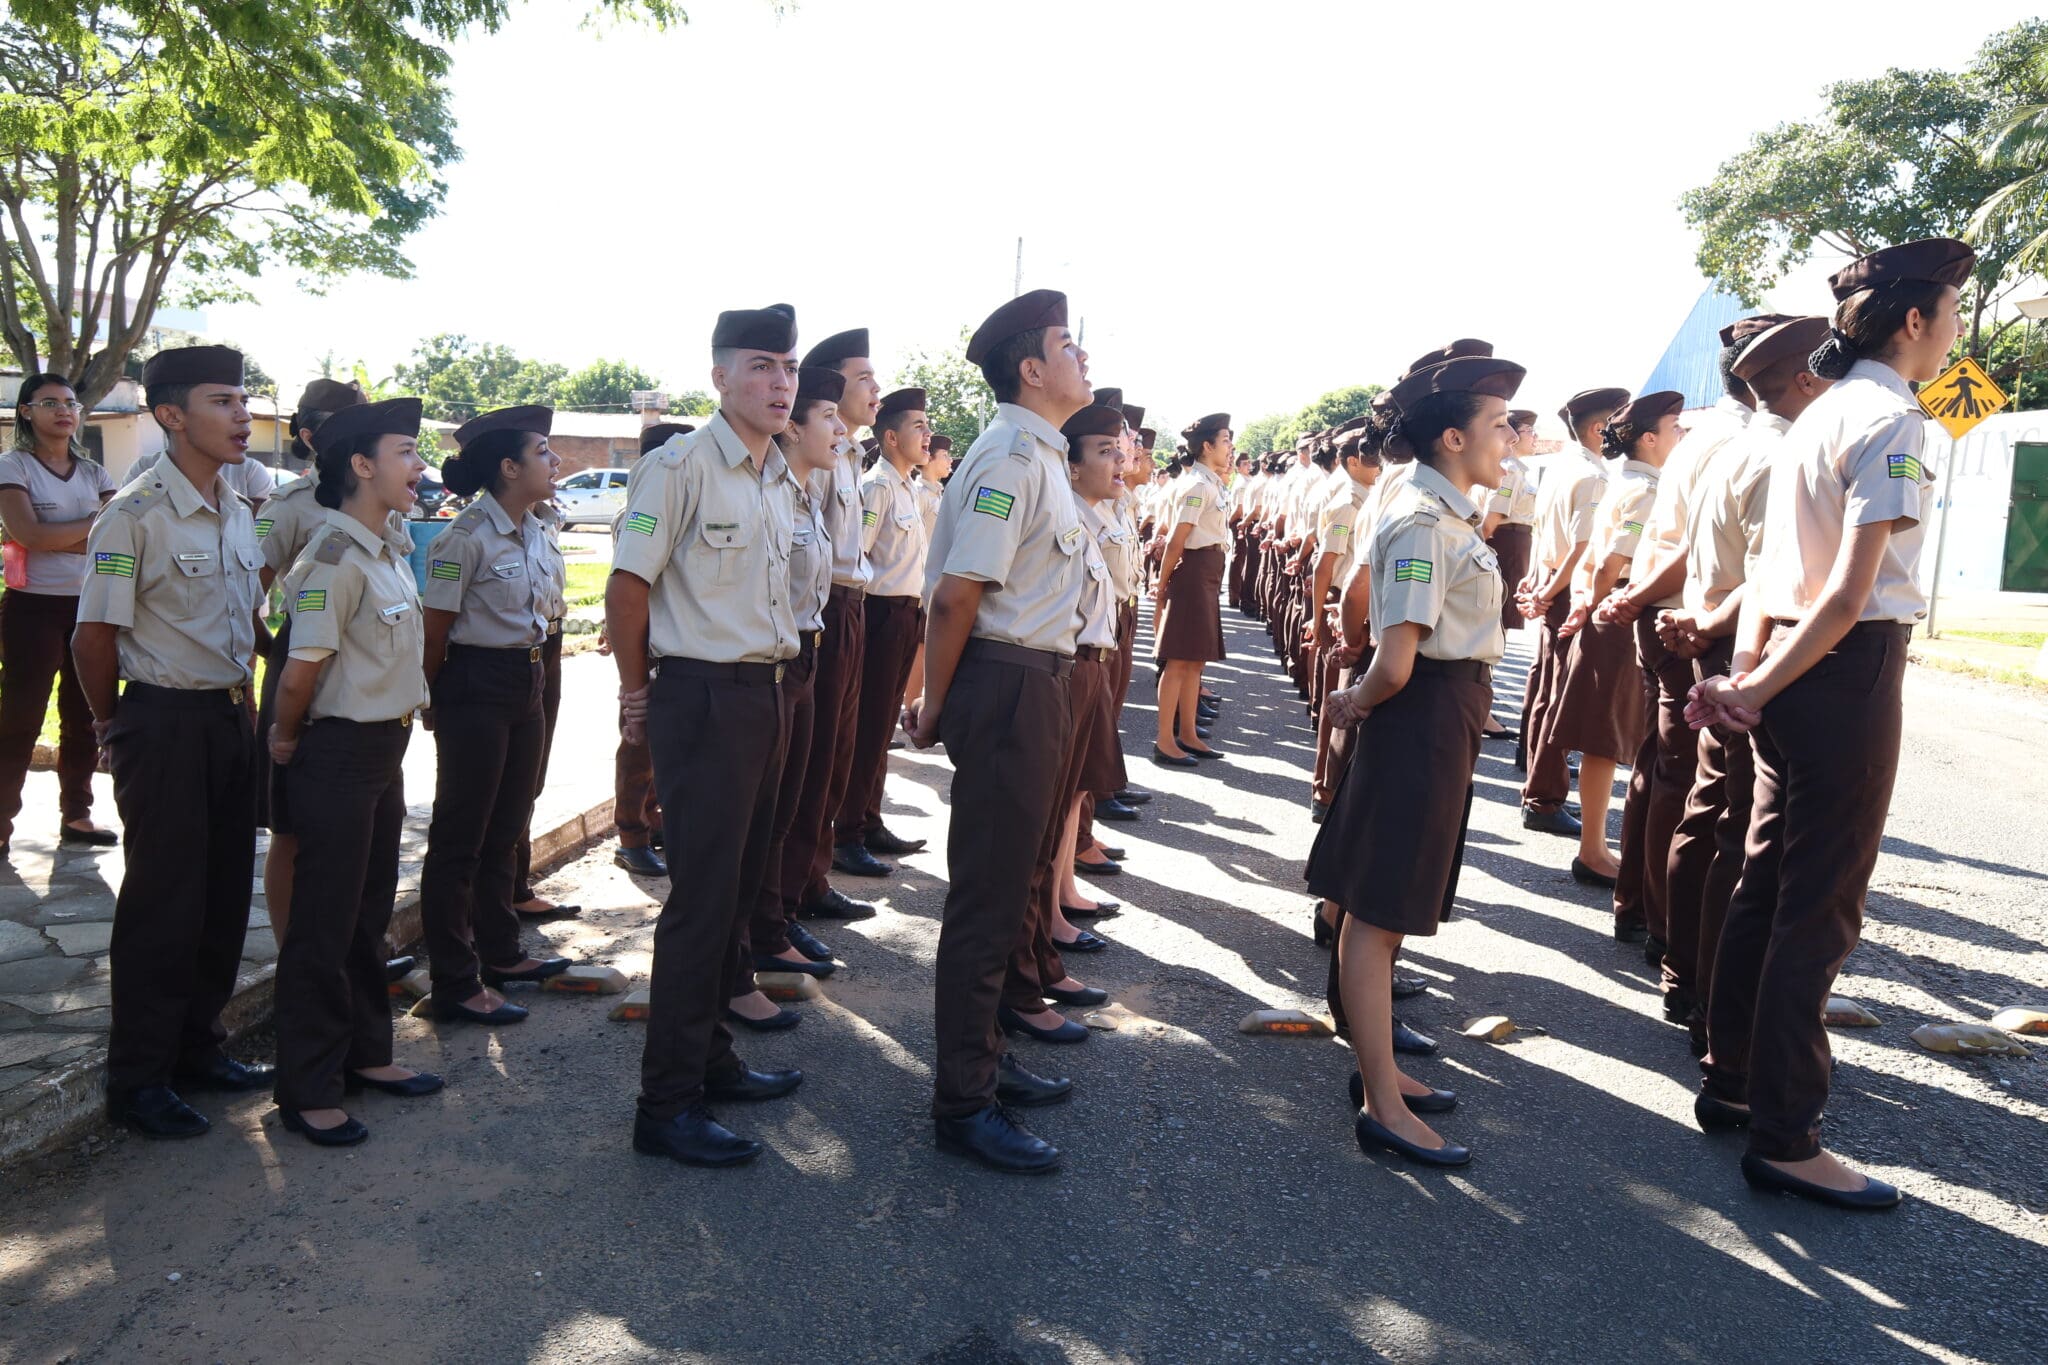 Exército anuncia primeiro Colégio Militar no estado de SP